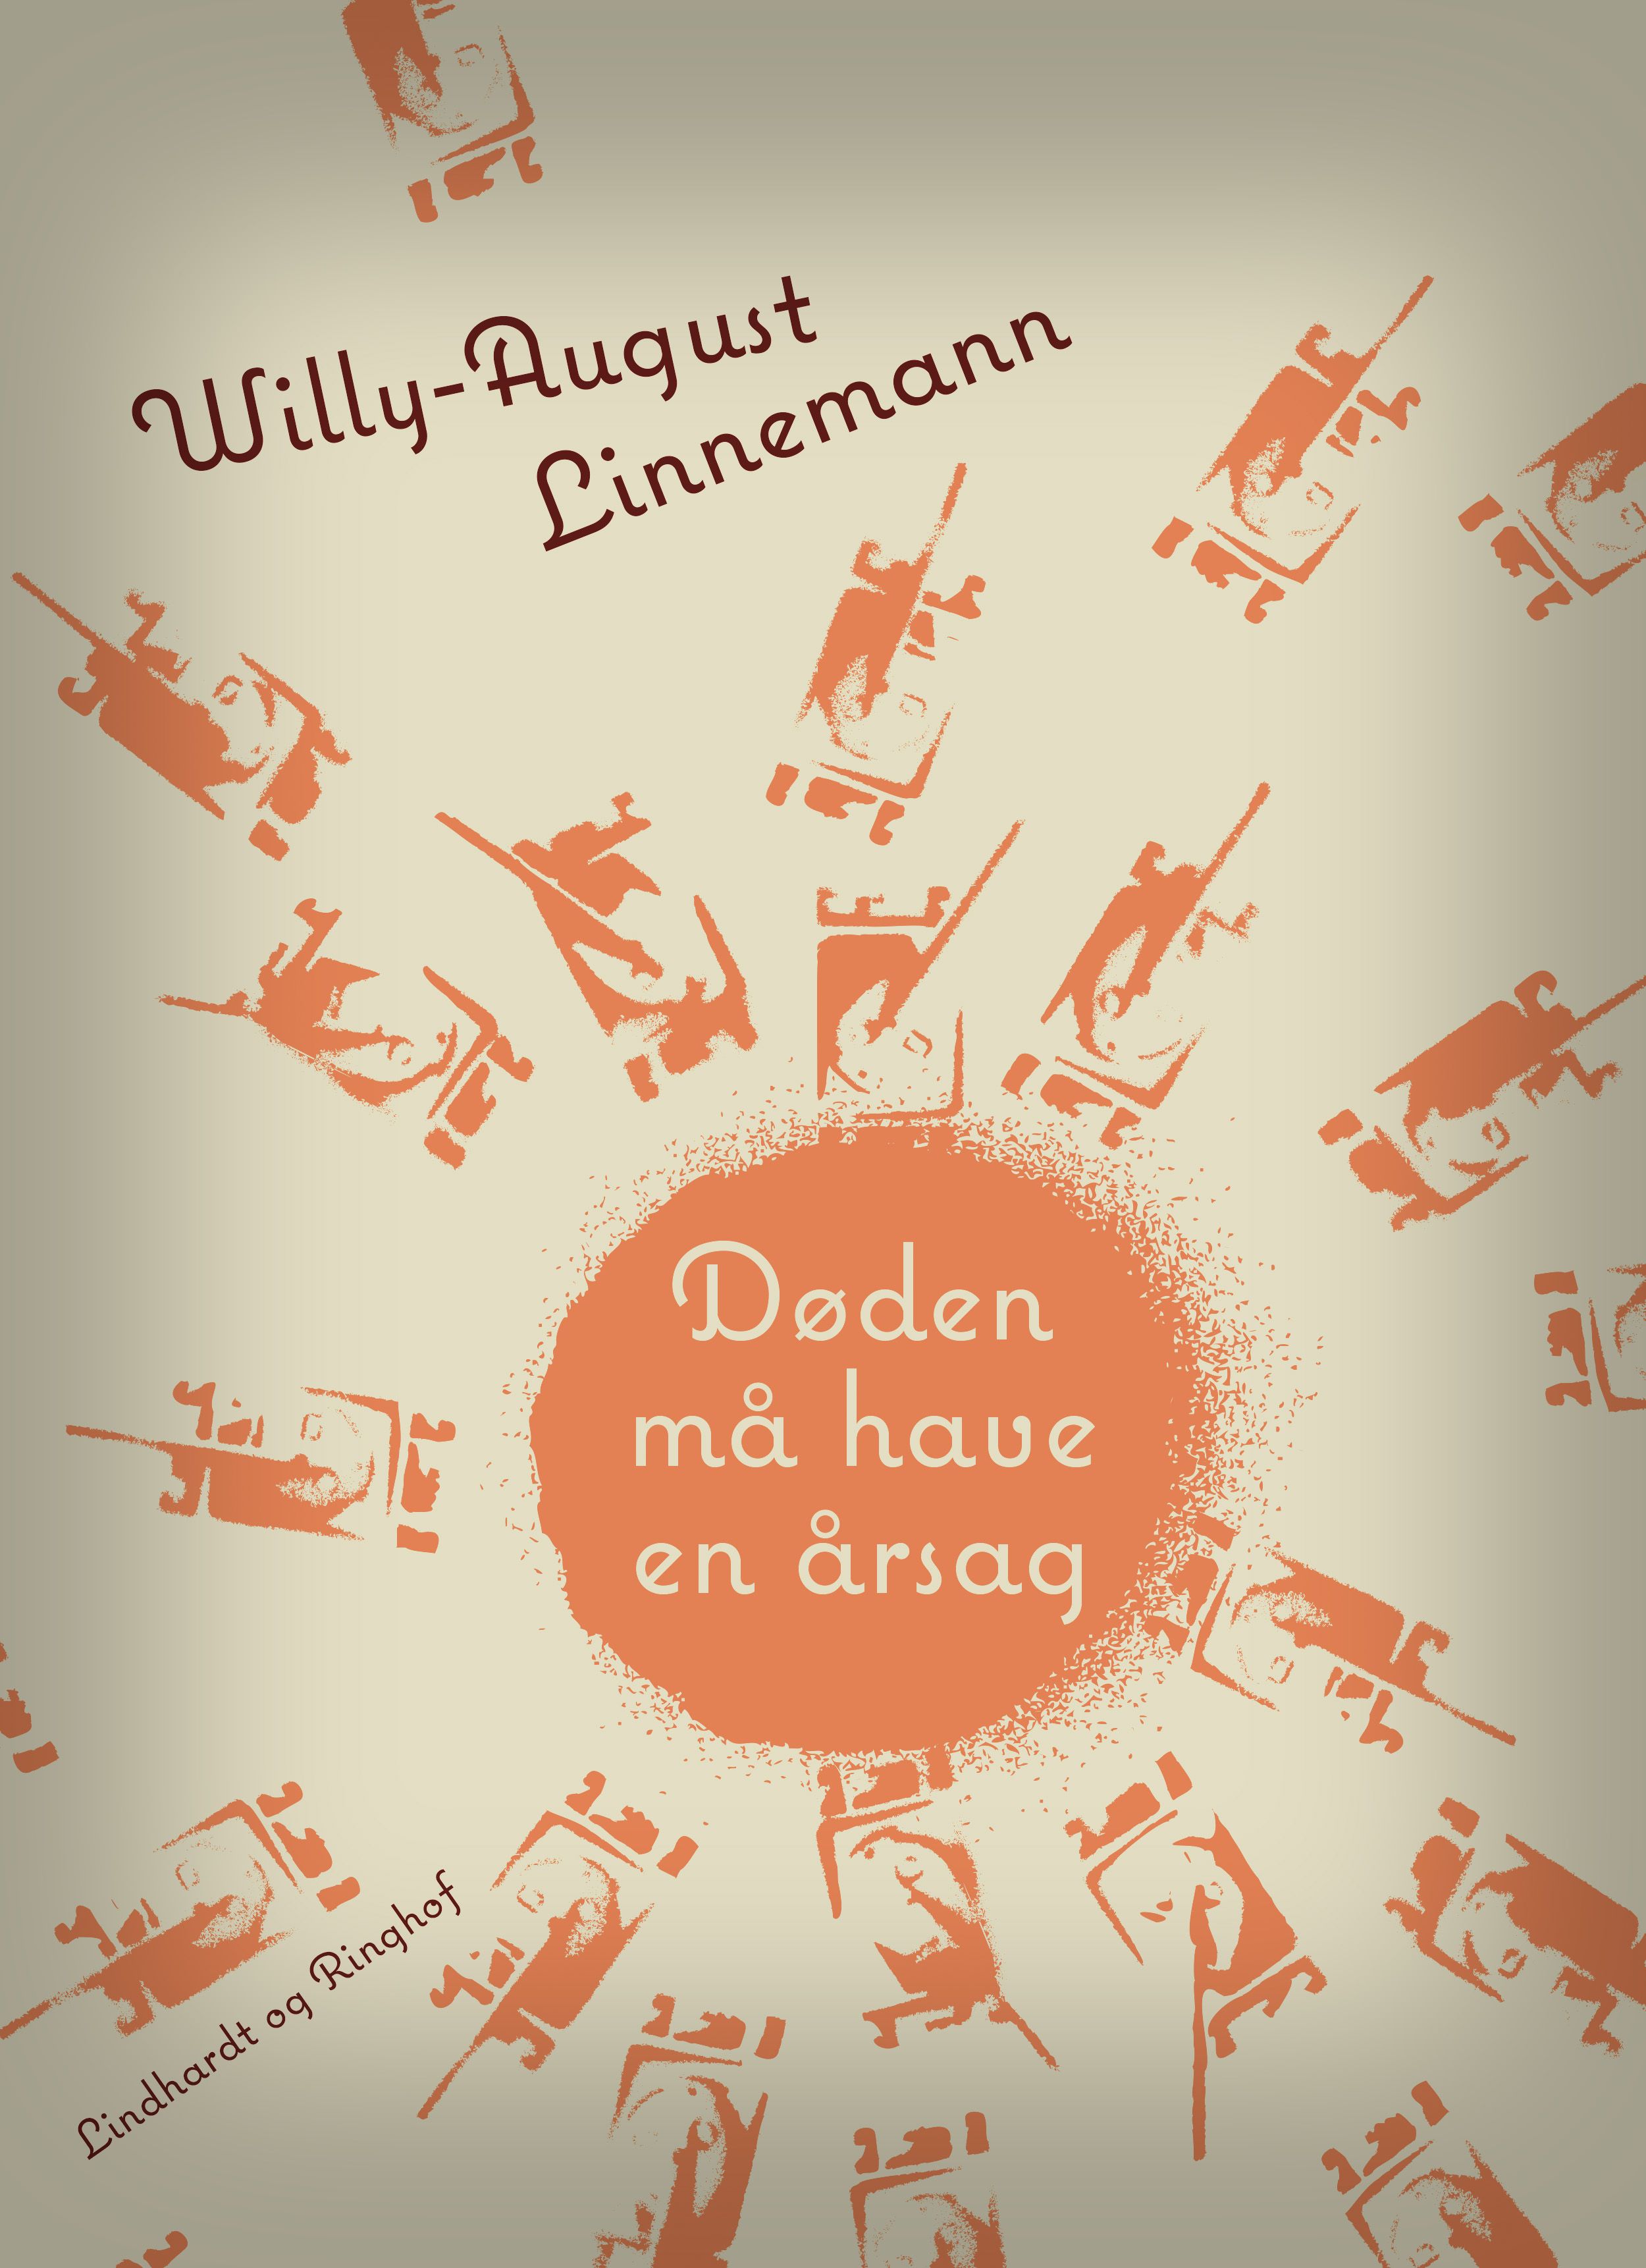 Døden må have en årsag, e-bok av Willy-August Linnemann